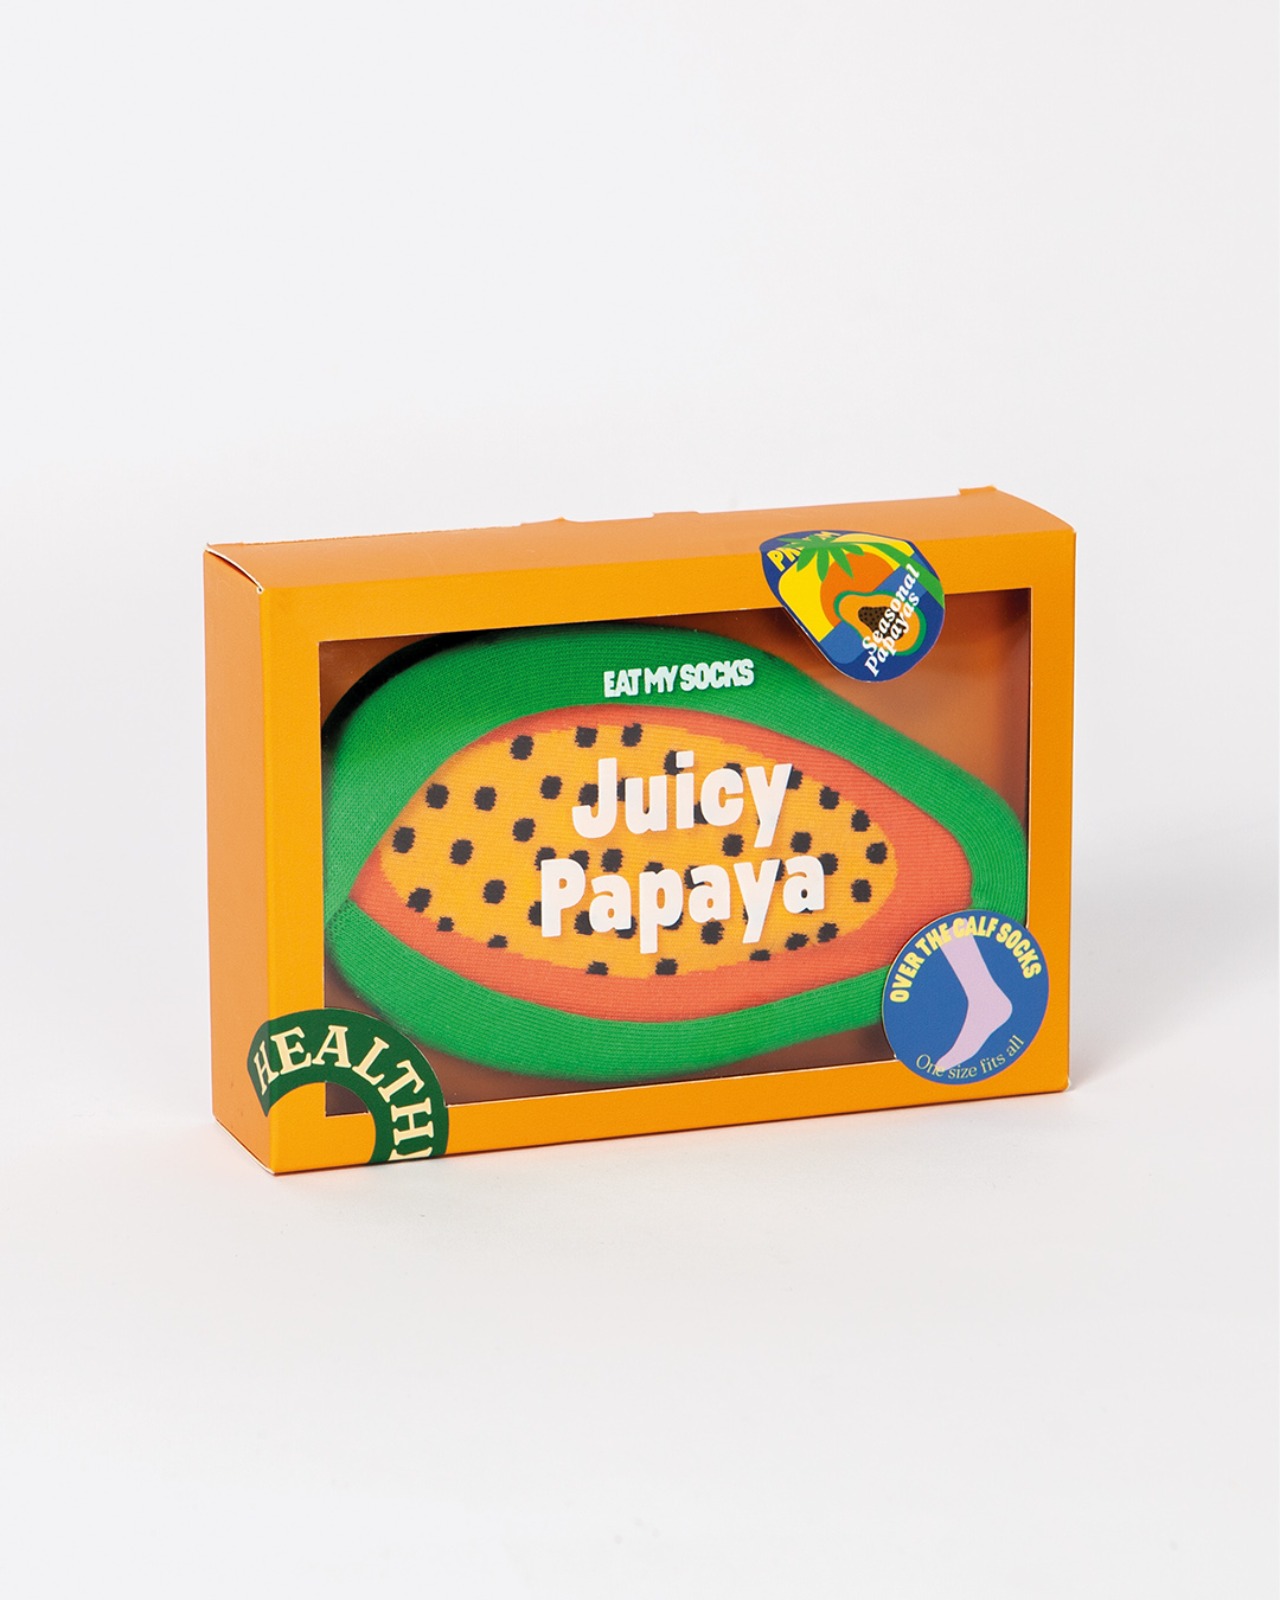 [EAT MY SOCKS] Juicy Papaya